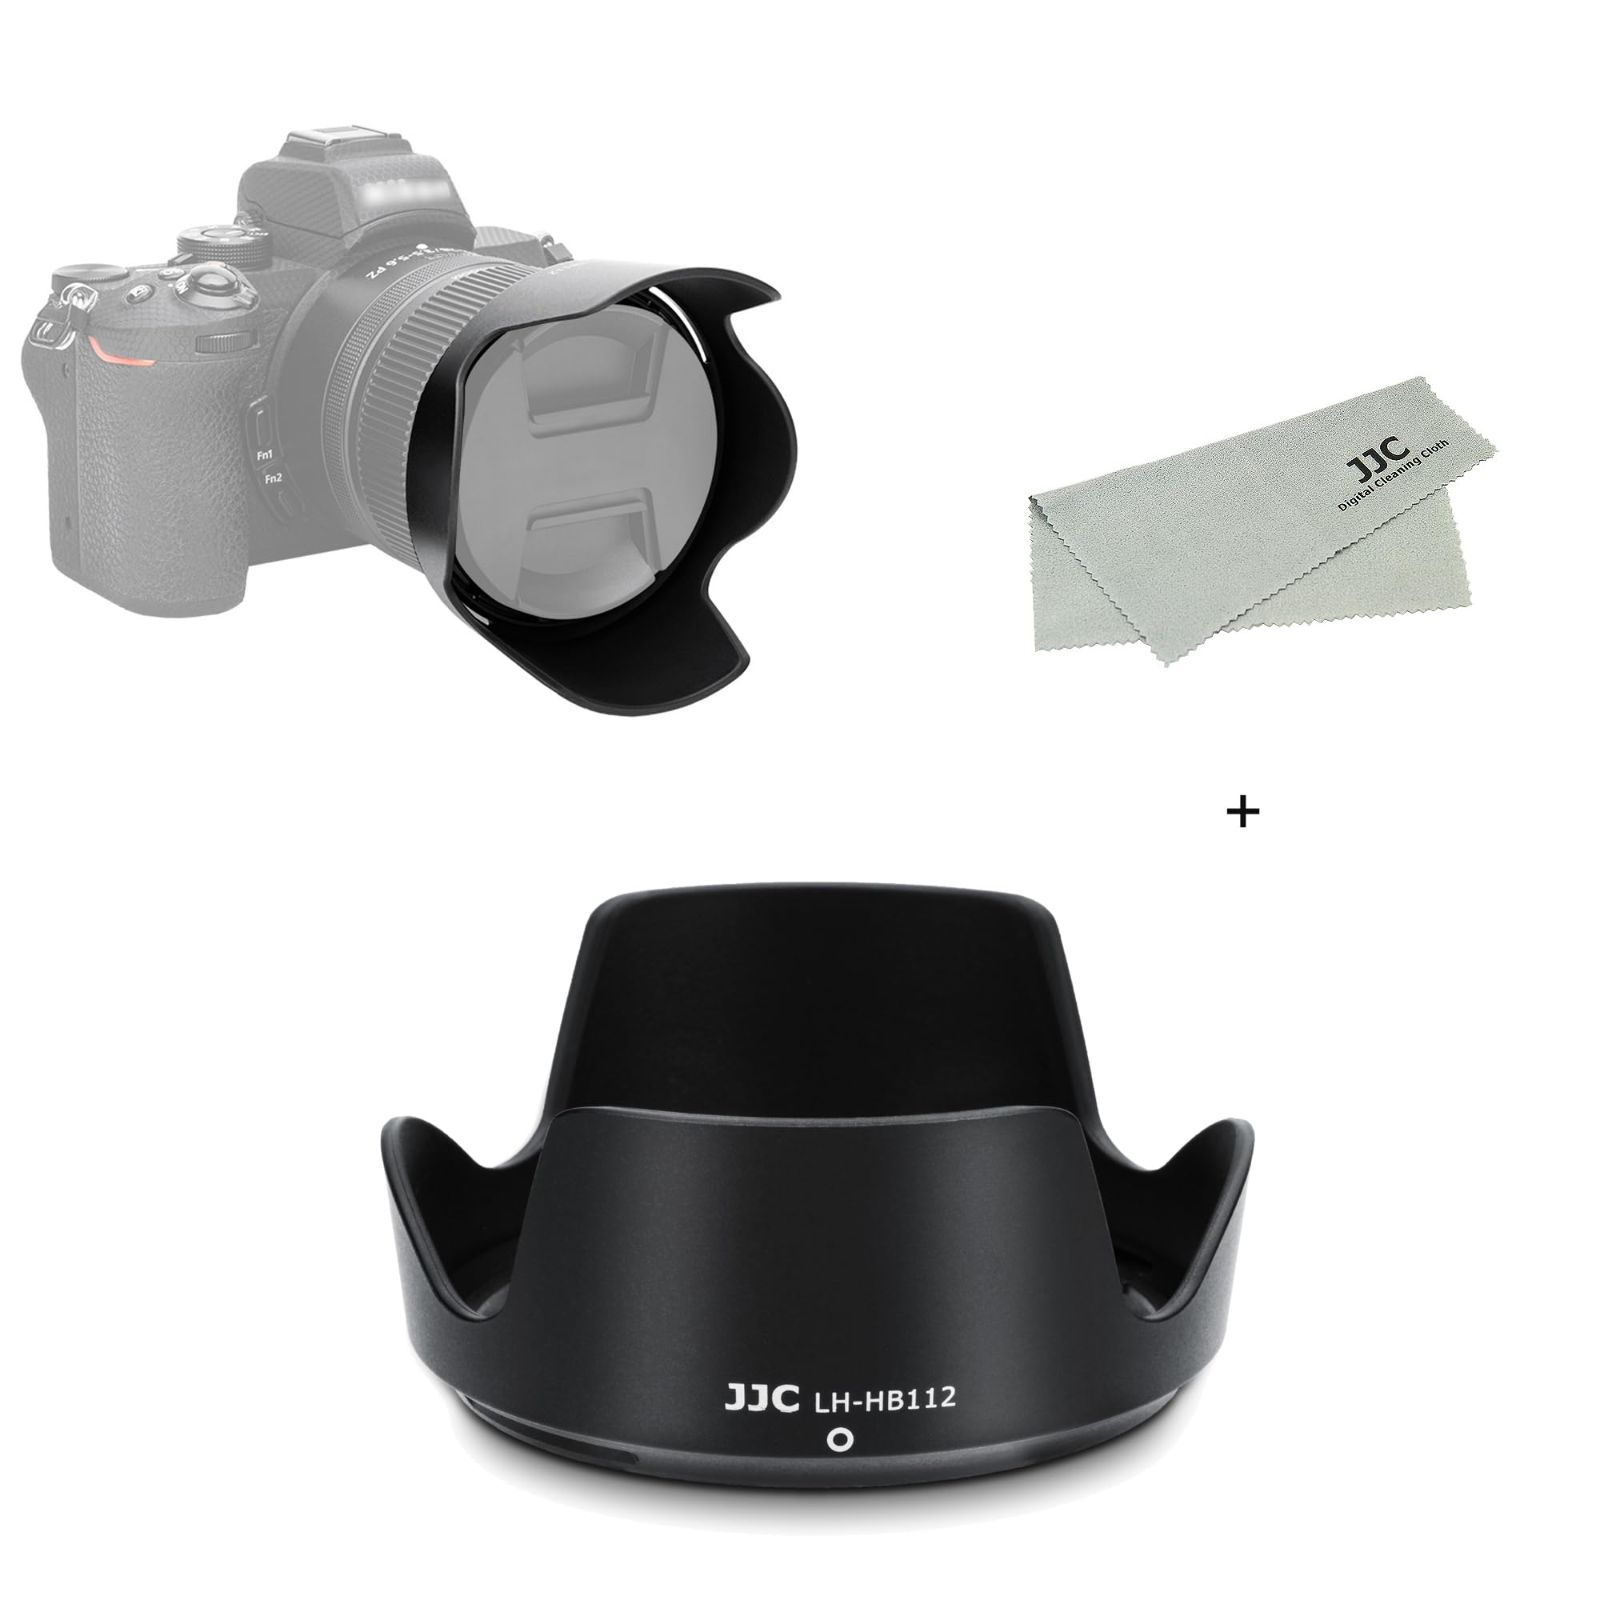 在庫処分】JJC HB-112 レンズフード 可逆式 Nikon NIKKOR Z DX 12-28mm f/3.5-5.6 PZ VR レンズ 用  ニコン Z シリーズ 交換レンズ用 Nikon Z fc Z50 Z30カメラ に対応 HB-112 互換 - メルカリ